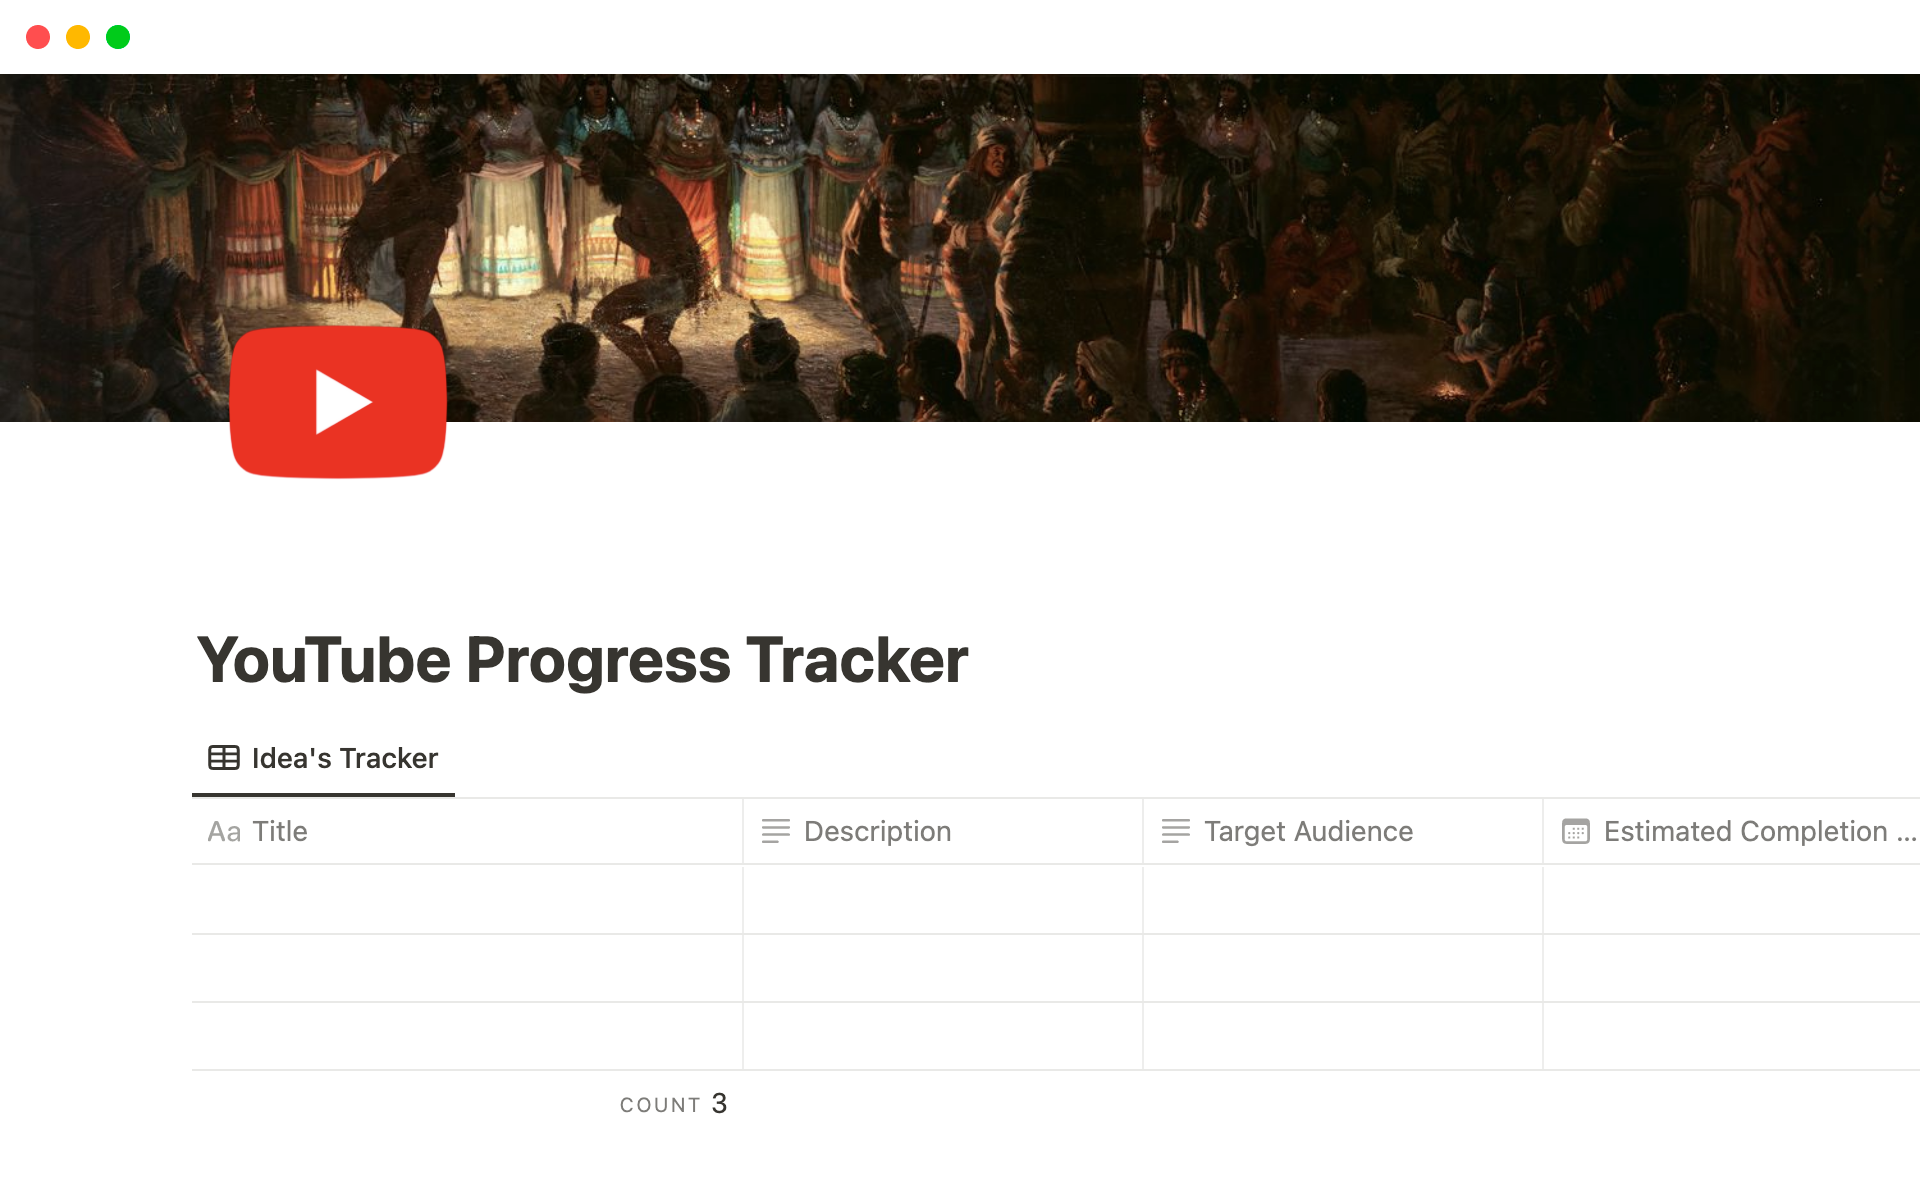 Vista previa de plantilla para YouTube Progress Tracker